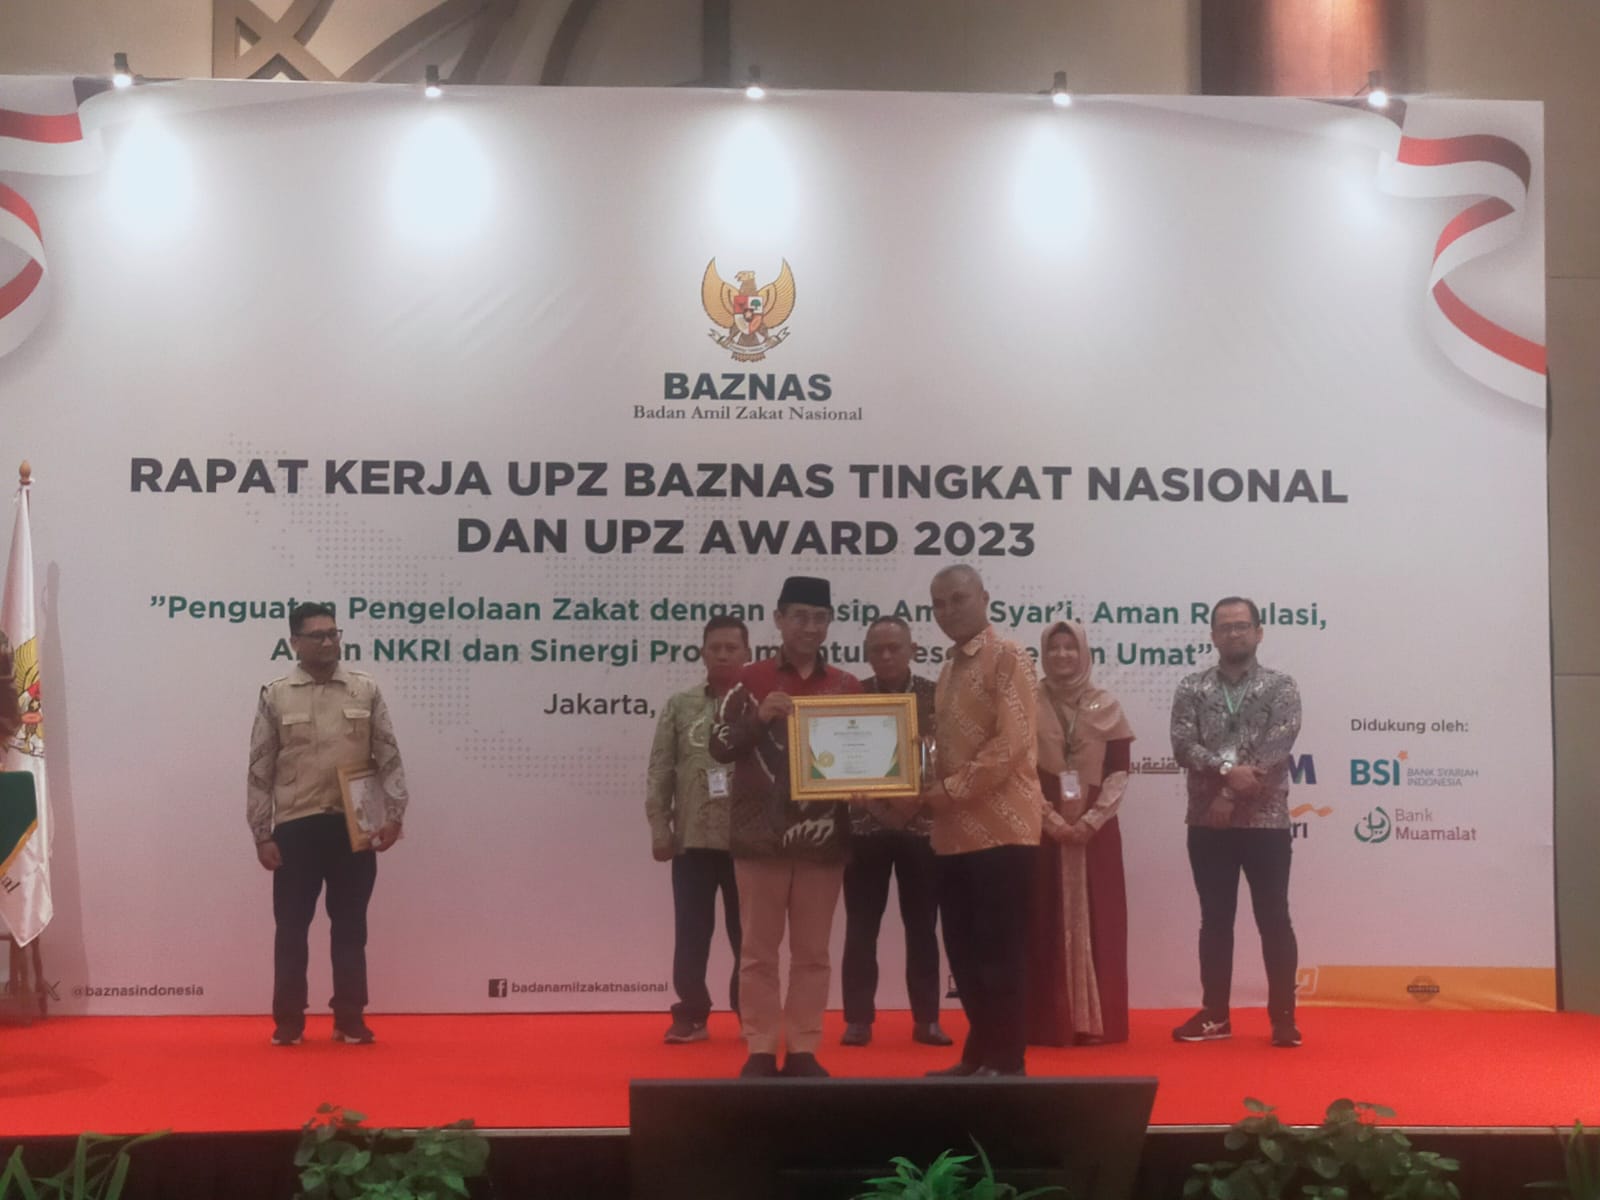 Ketua Pengurus UPZ BAZNAS Semen Padang, Durain Parmanoan (kanan), saat menerima penghargaan UPZ Awards 2023 yang diserahkan oleh Wakil Ketua BAZNAS RI H. Mohkhamad Mahdum, SE pada Rapat Kerja UPZ BAZNAS Tingkat Nasional dan UPZ Awards 2023 yang digelar pa